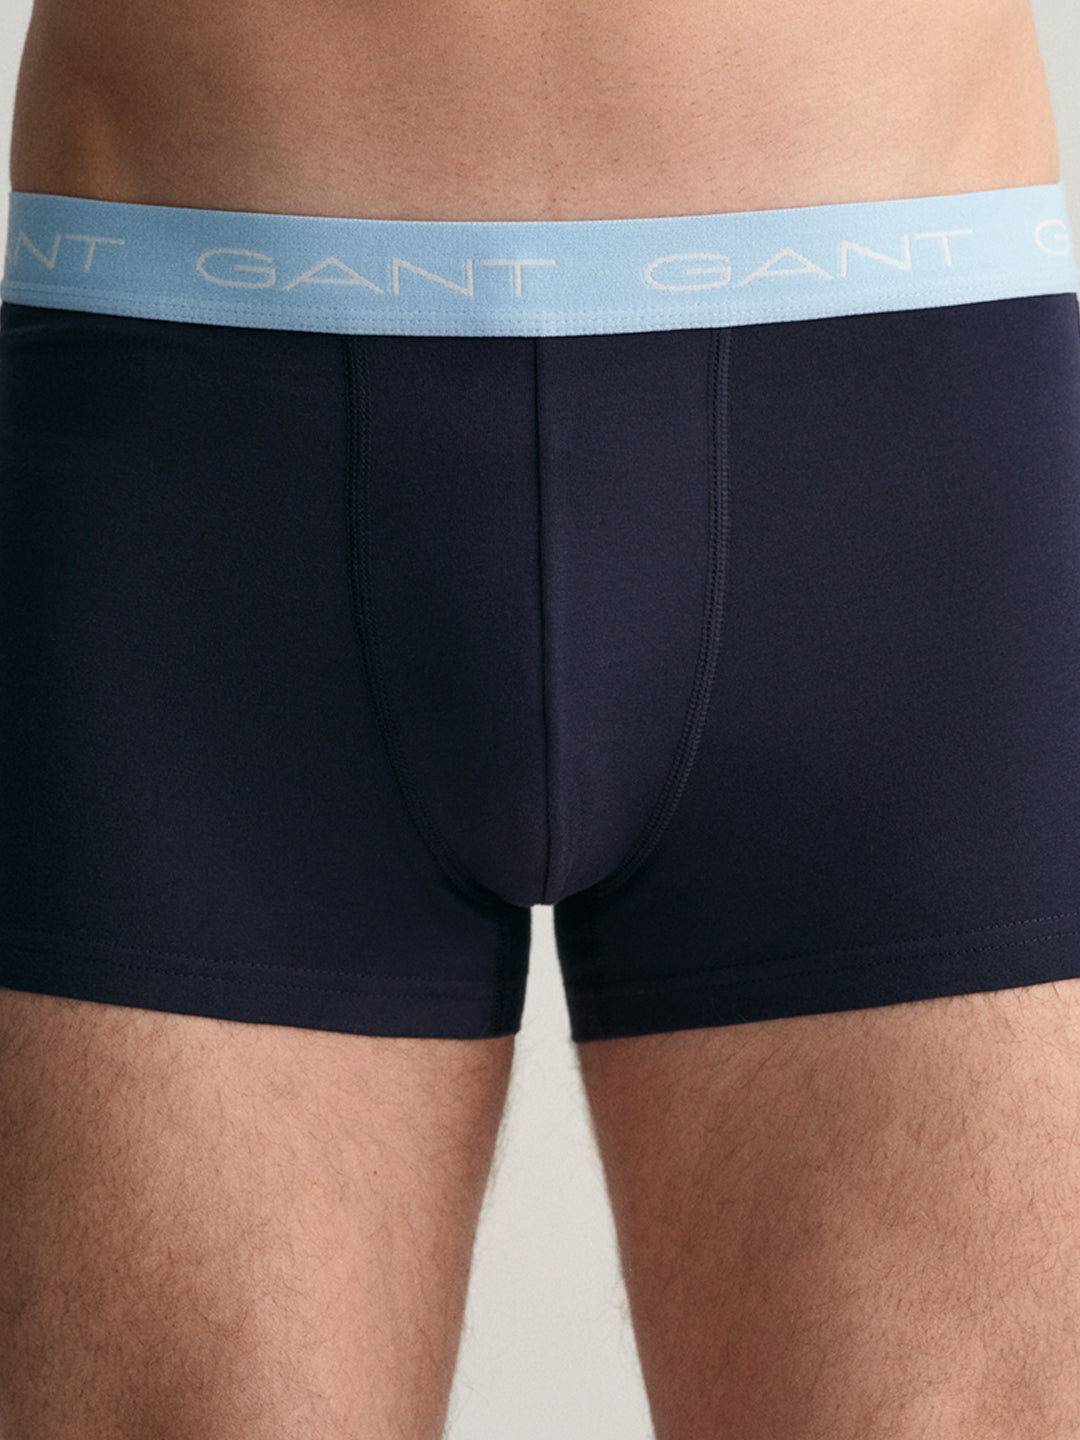 Gant Men Pack Of 3 Brand Logo Printed Trunks 8905241187171